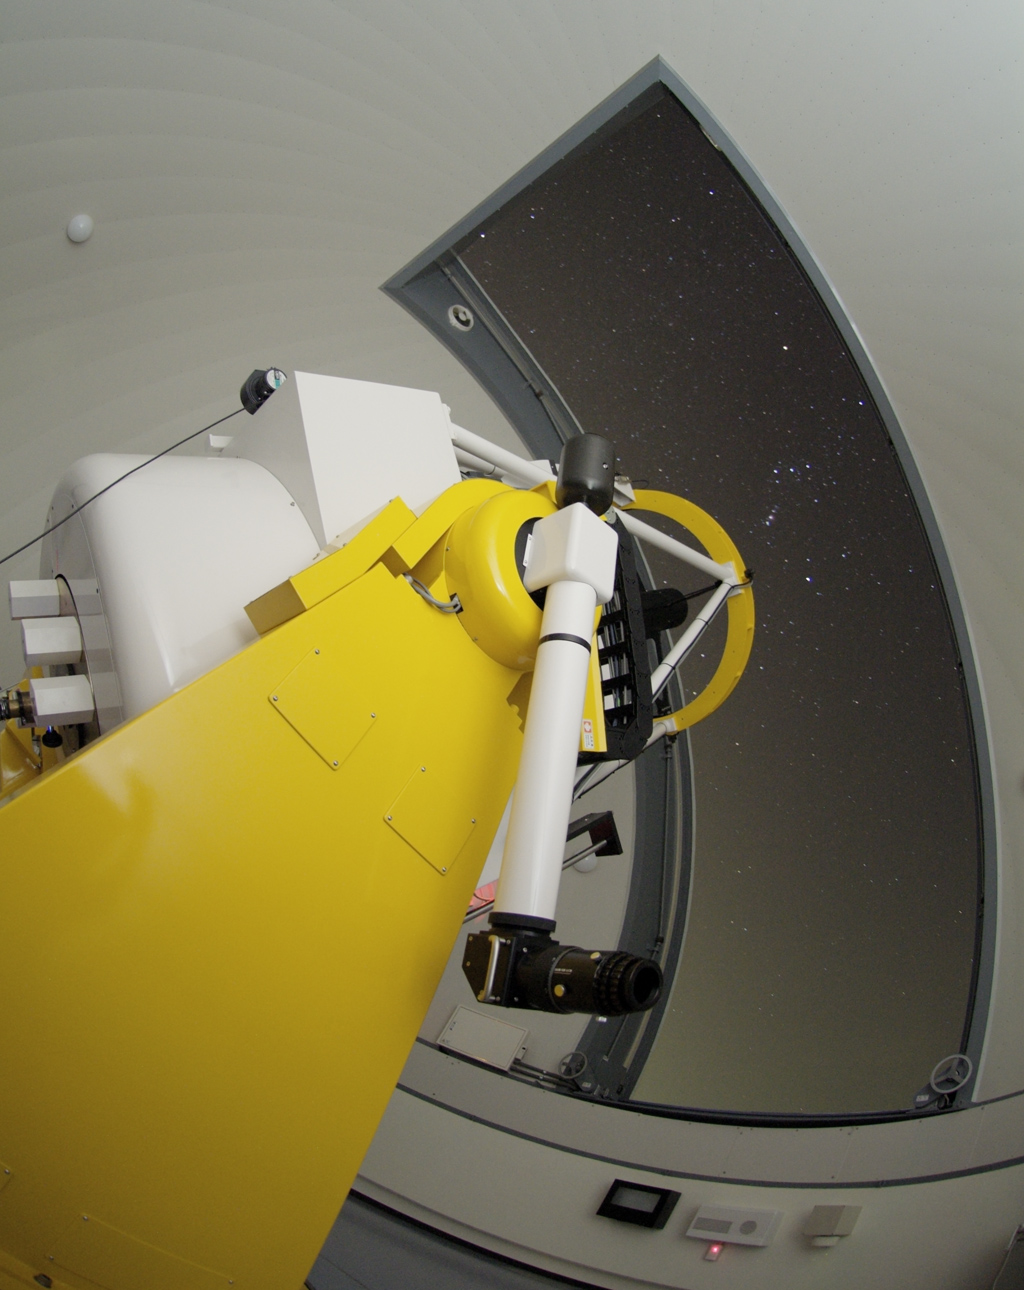 石垣島天文台105cm望遠鏡ドーム内からみたオリオン座